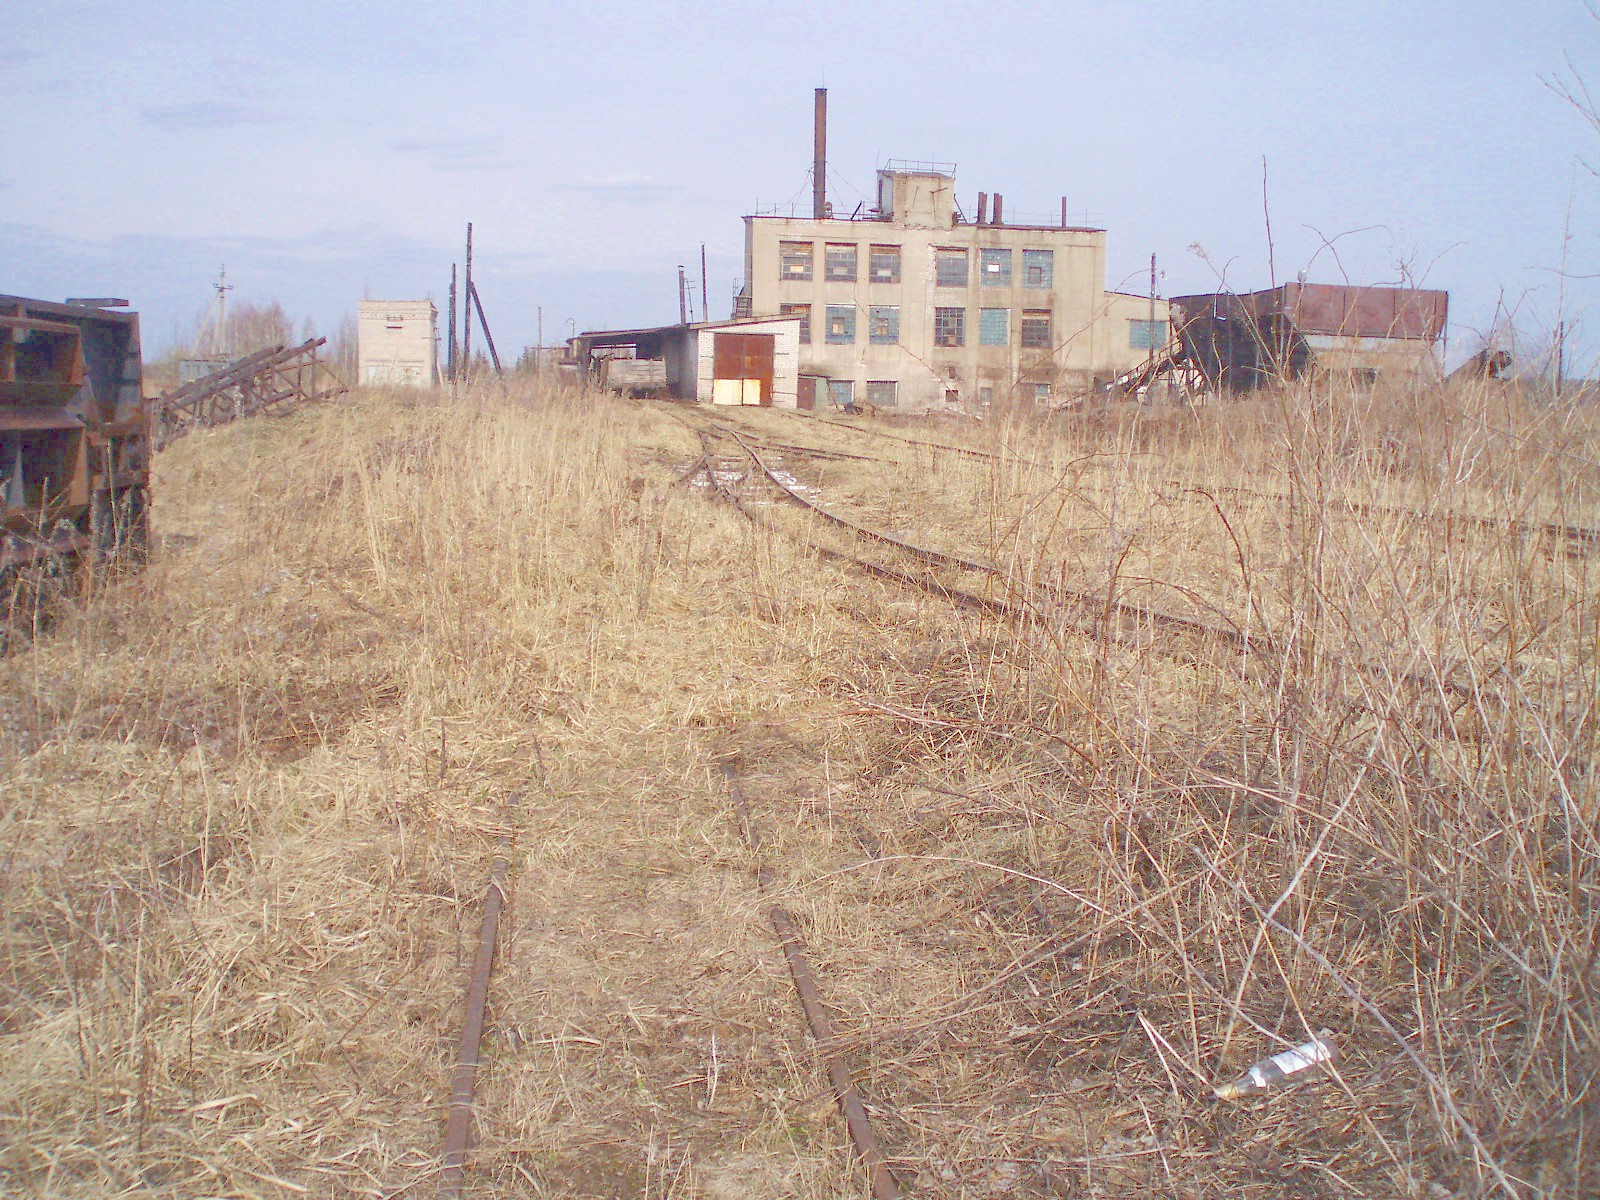 Узкоколейная железная дорога Кимрского торфопредприятия  — фотографии, сделанные в 2007 году (часть 17)